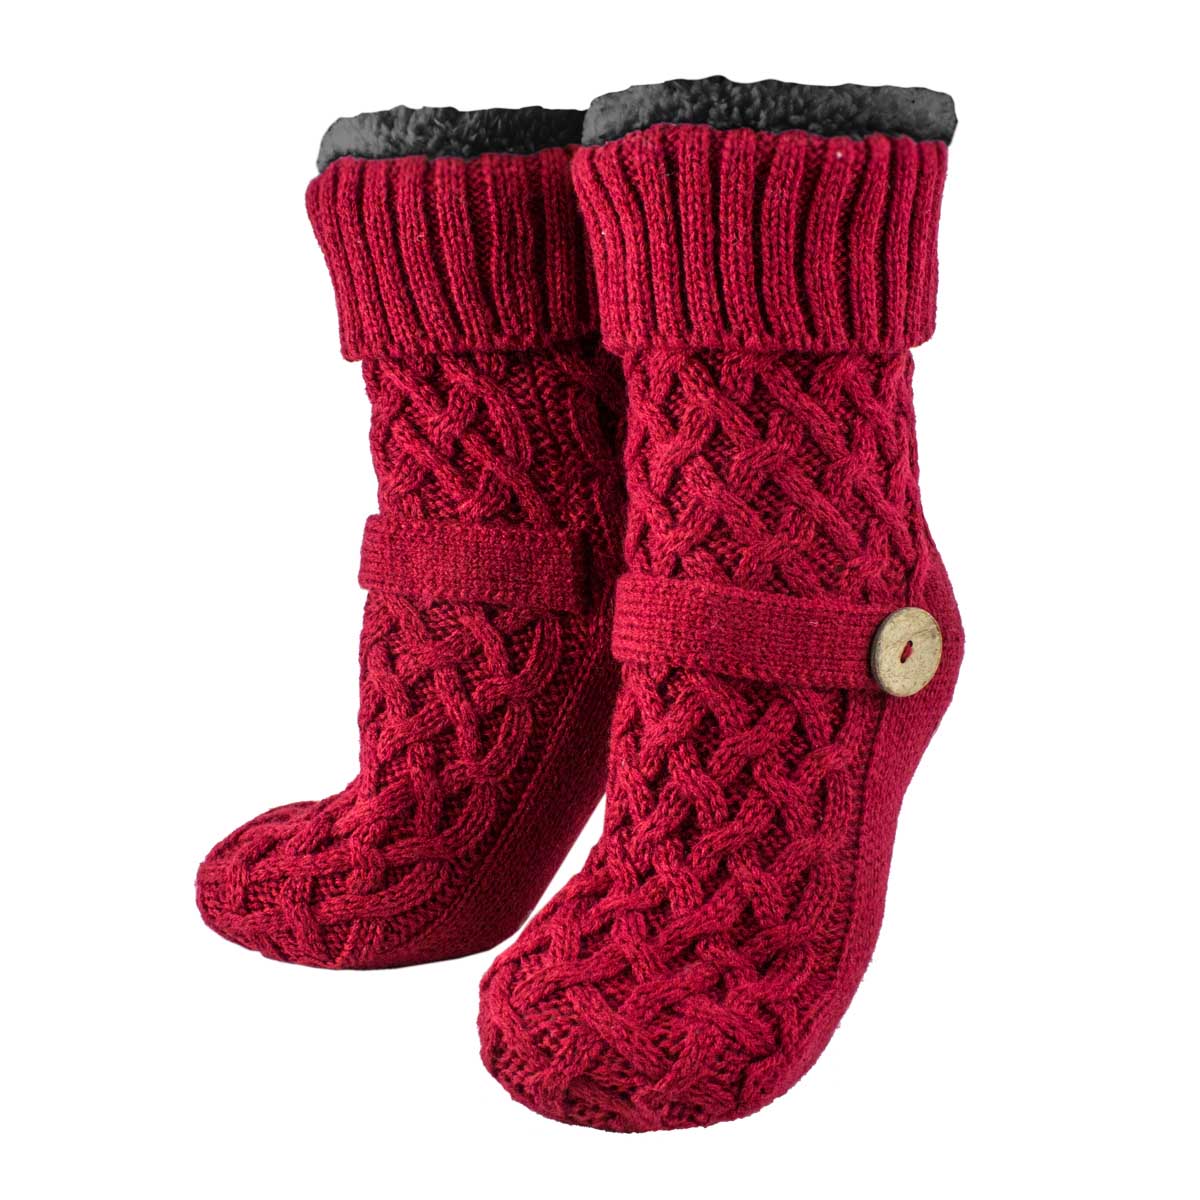 Women's Slipper Socks Non-Skid Sweater Buckle Warm Argan Oil Infused Fuzzy Black By MinxNY